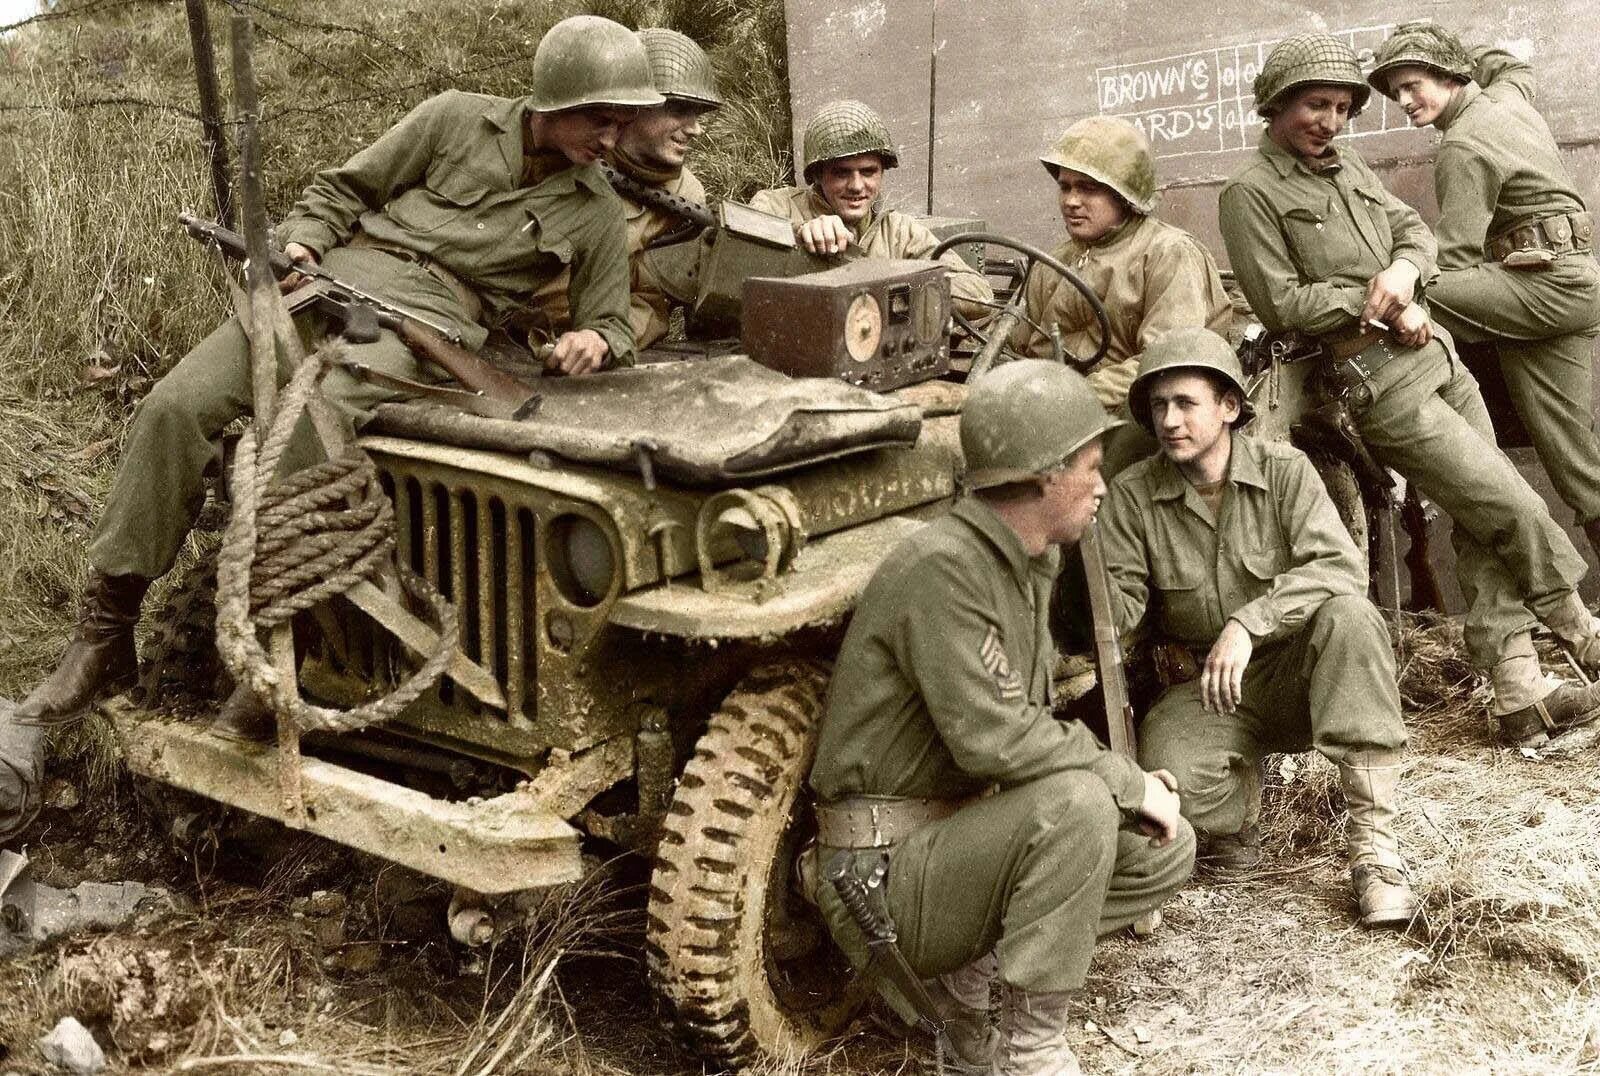 Jeep Willys 1944. Американский солдат 2 мировой войны. Американские солдаты второй мировой войны. Джип Виллис 1941.